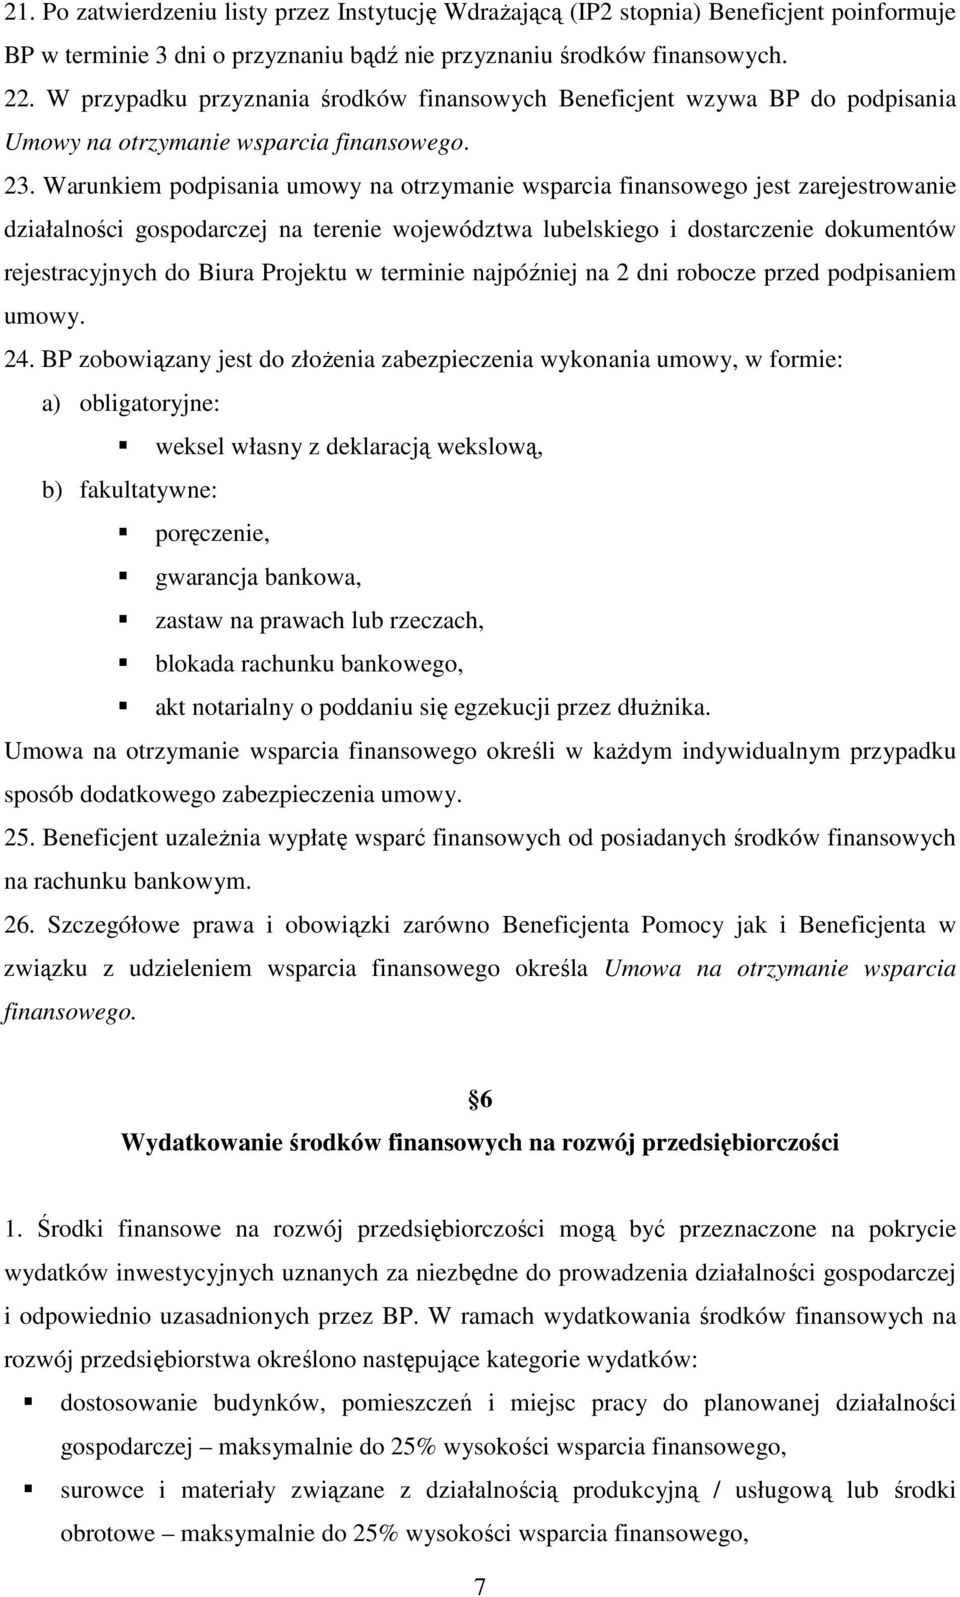 Warunkiem podpisania umowy na otrzymanie wsparcia finansowego jest zarejestrowanie działalności gospodarczej na terenie województwa lubelskiego i dostarczenie dokumentów rejestracyjnych do Biura